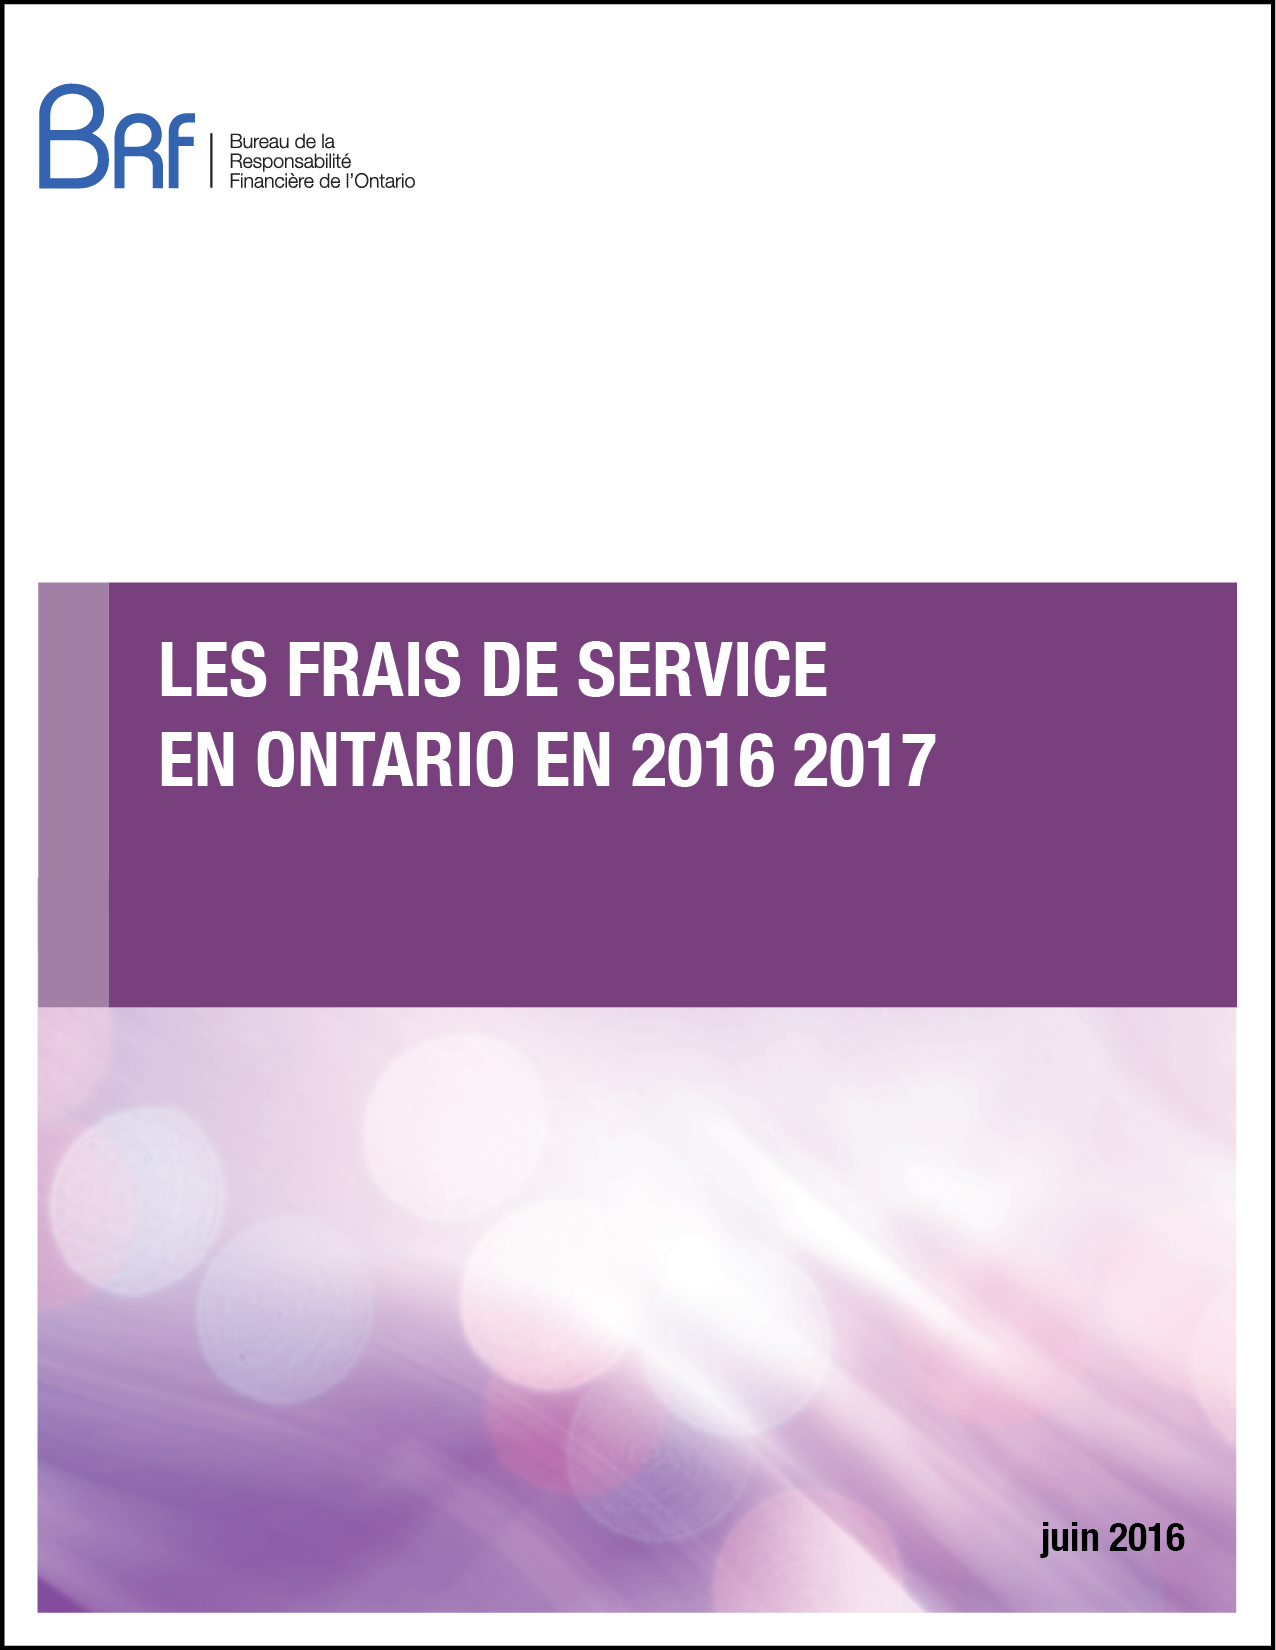 Les frais de service en Ontario en 2016 2017